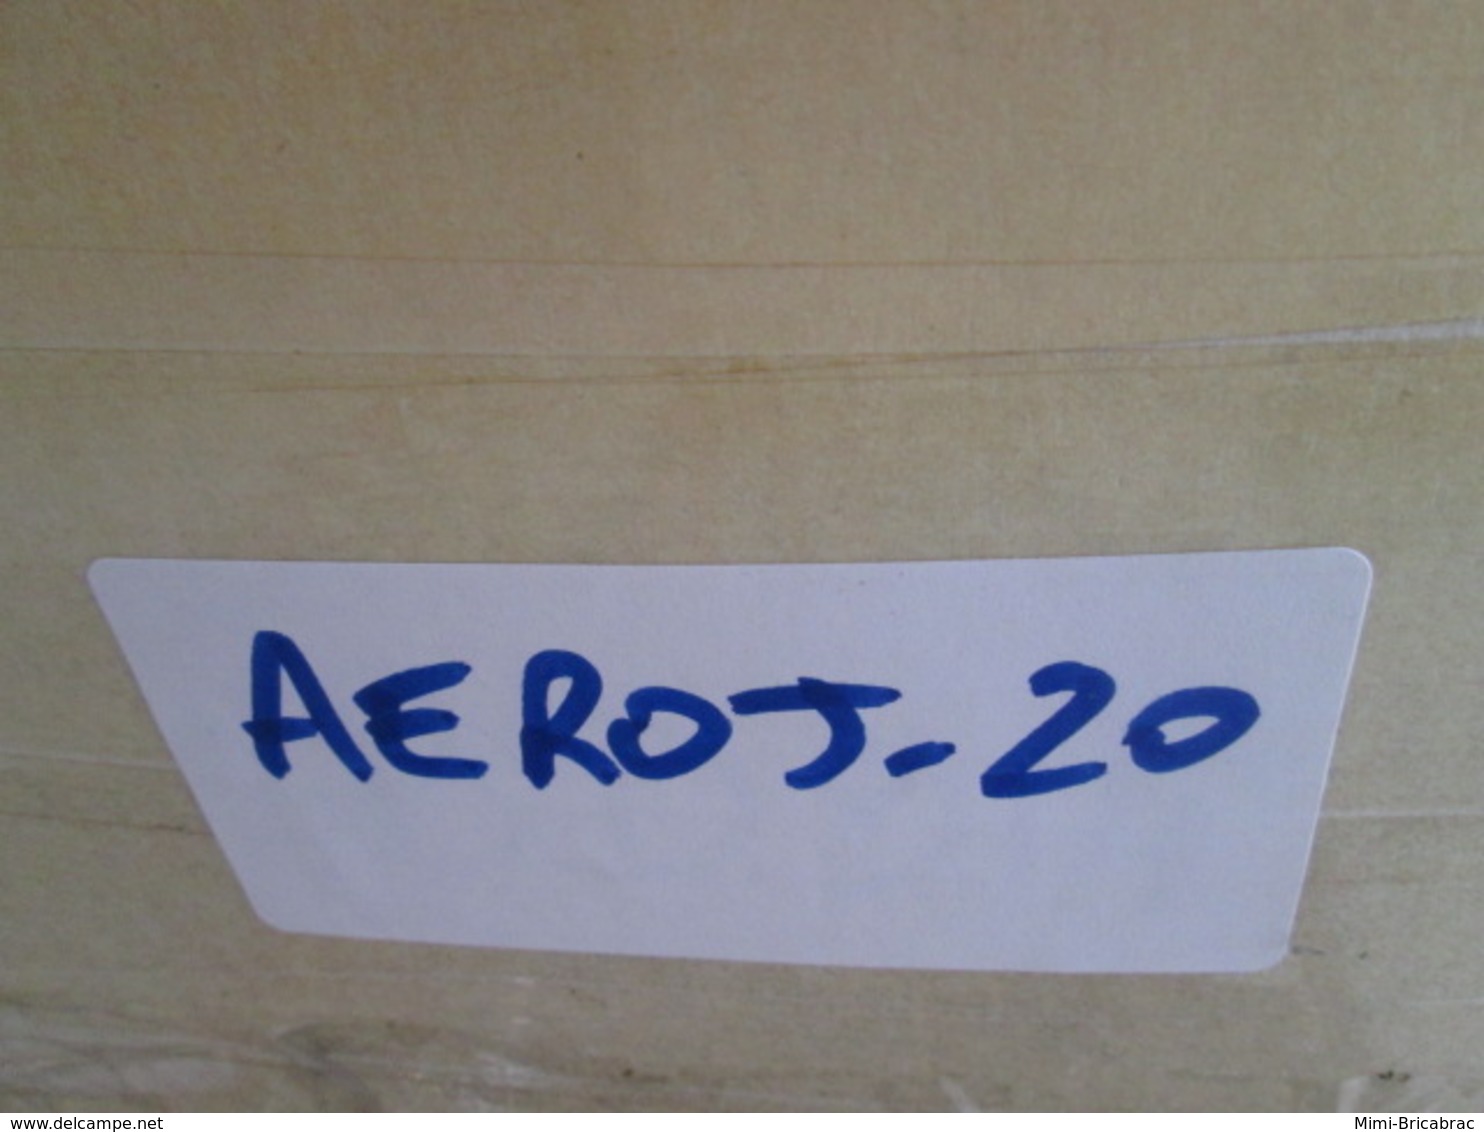 AEROJ20 Superbe Revue AERO-JOURNAL HS n°11 de 2012, très bon état , valait 11.5 €. Sommaire en photo 3